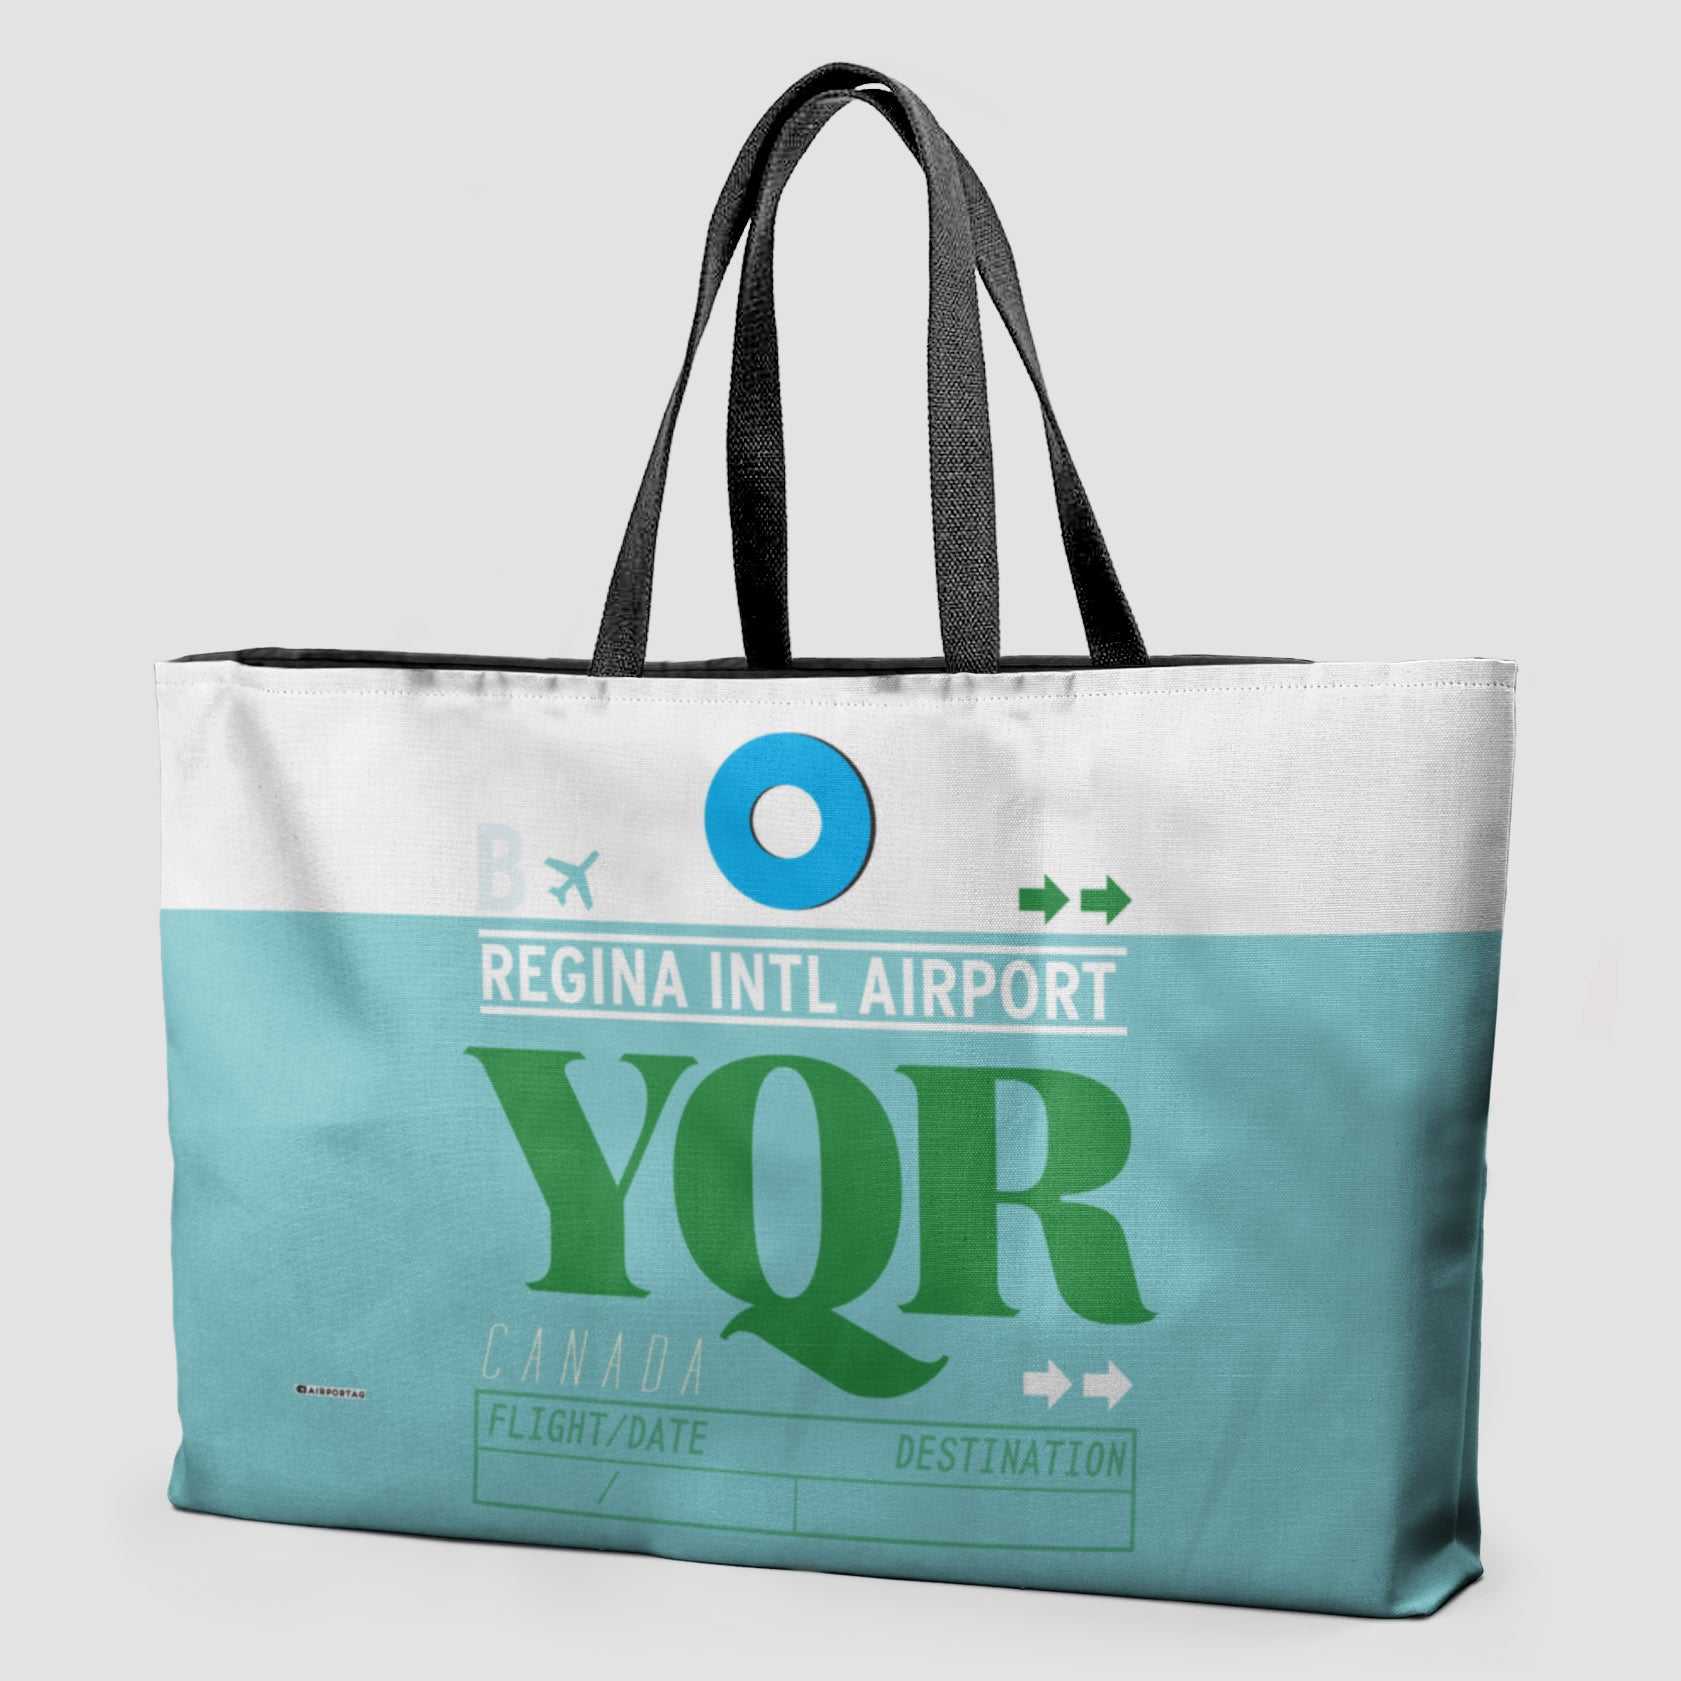 YQR - Weekender Bag - Airportag